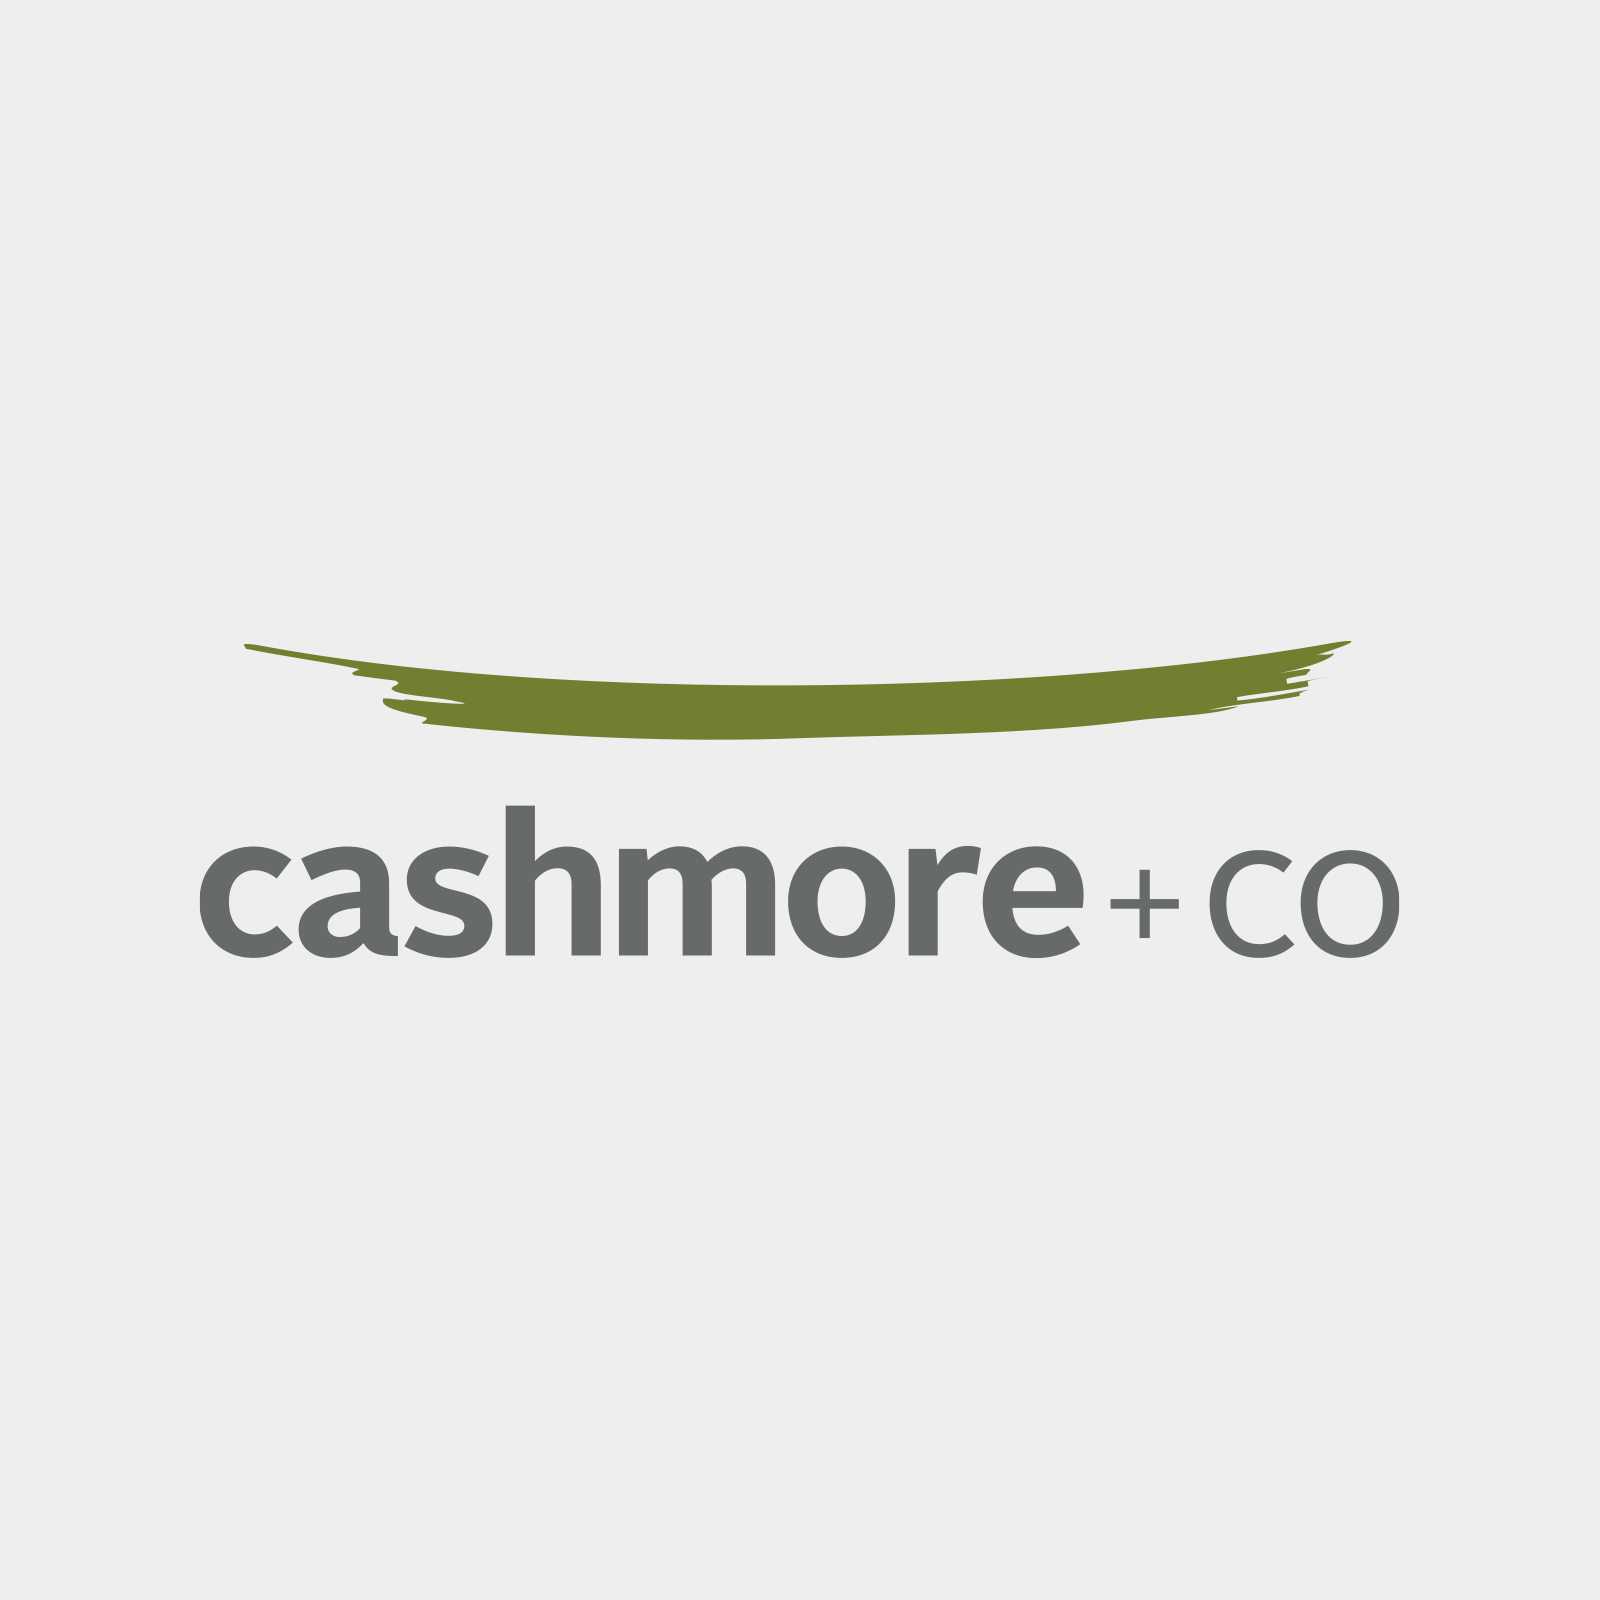 Cashmore+Co - Identity